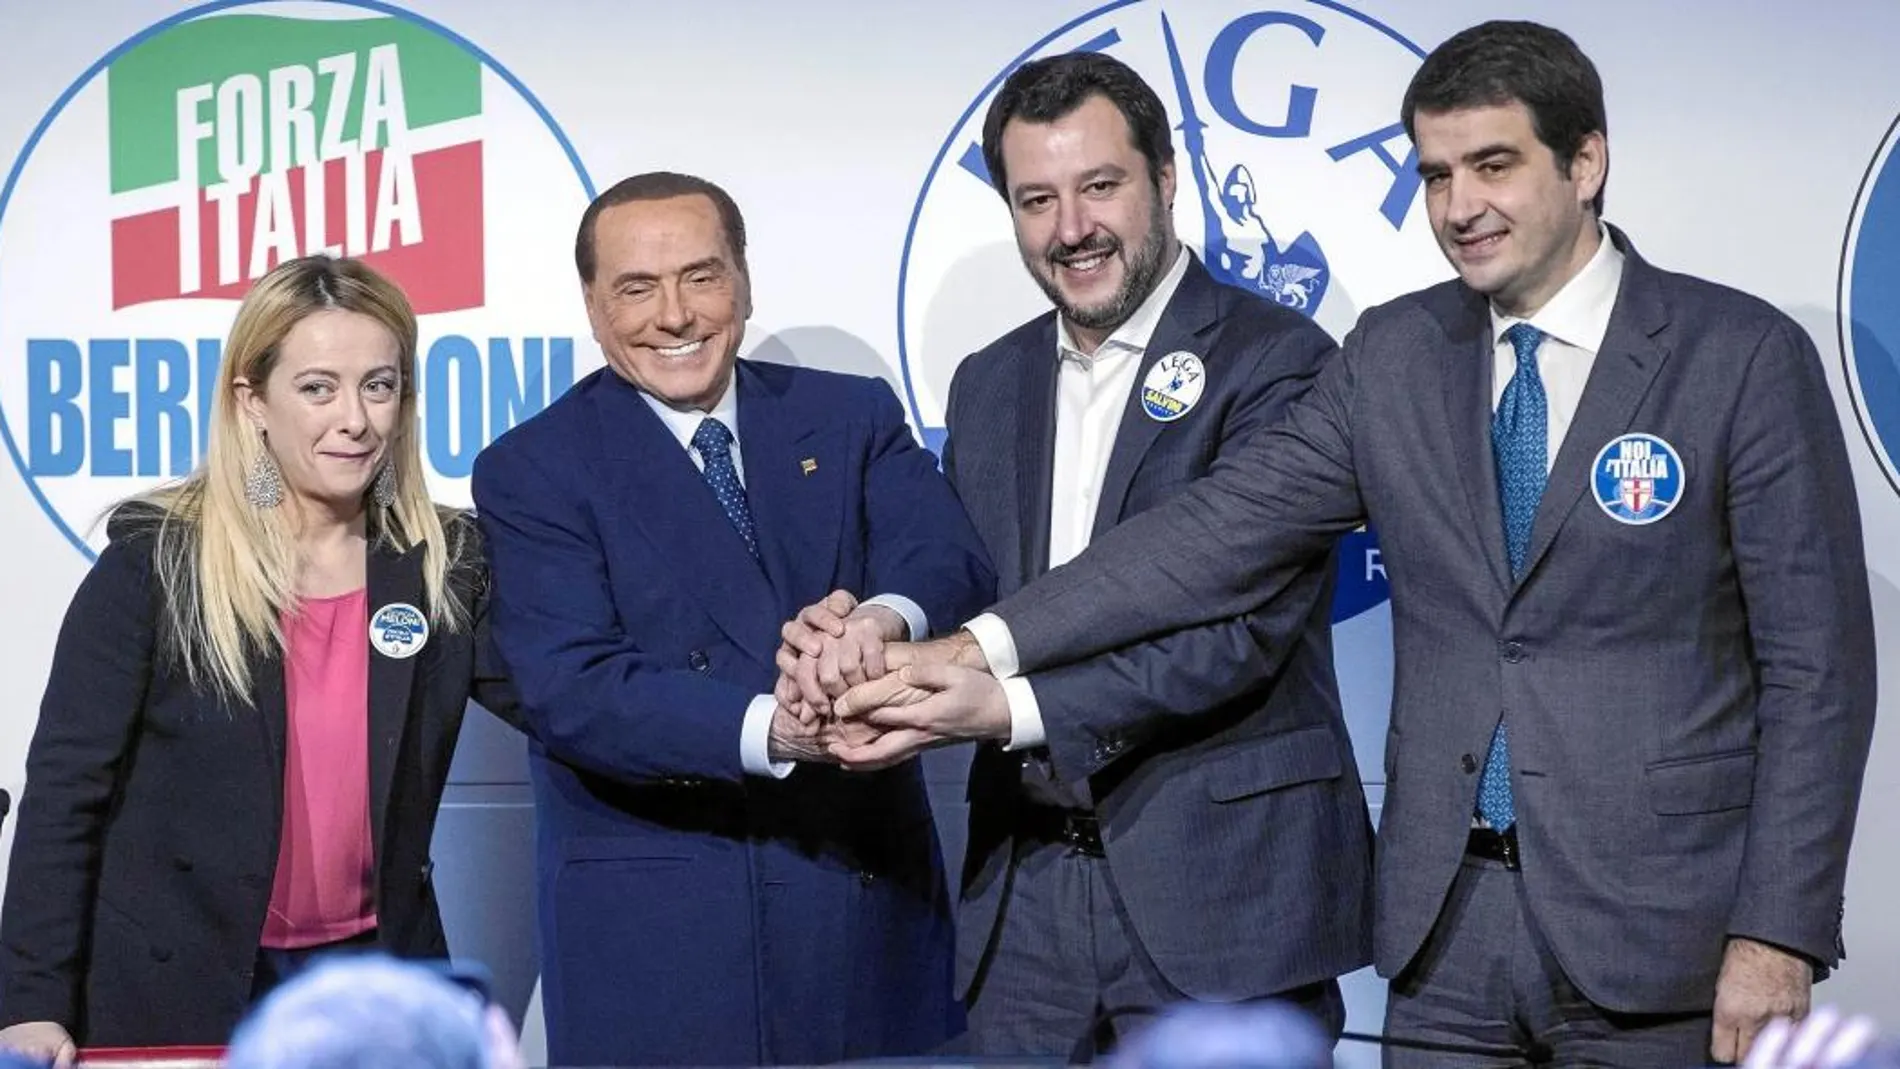 Silvio Berlusconi y Matteo Salvini posan junto a los otros dos líderes de la coalición de derechas en un acto electoral, ayer en Roma